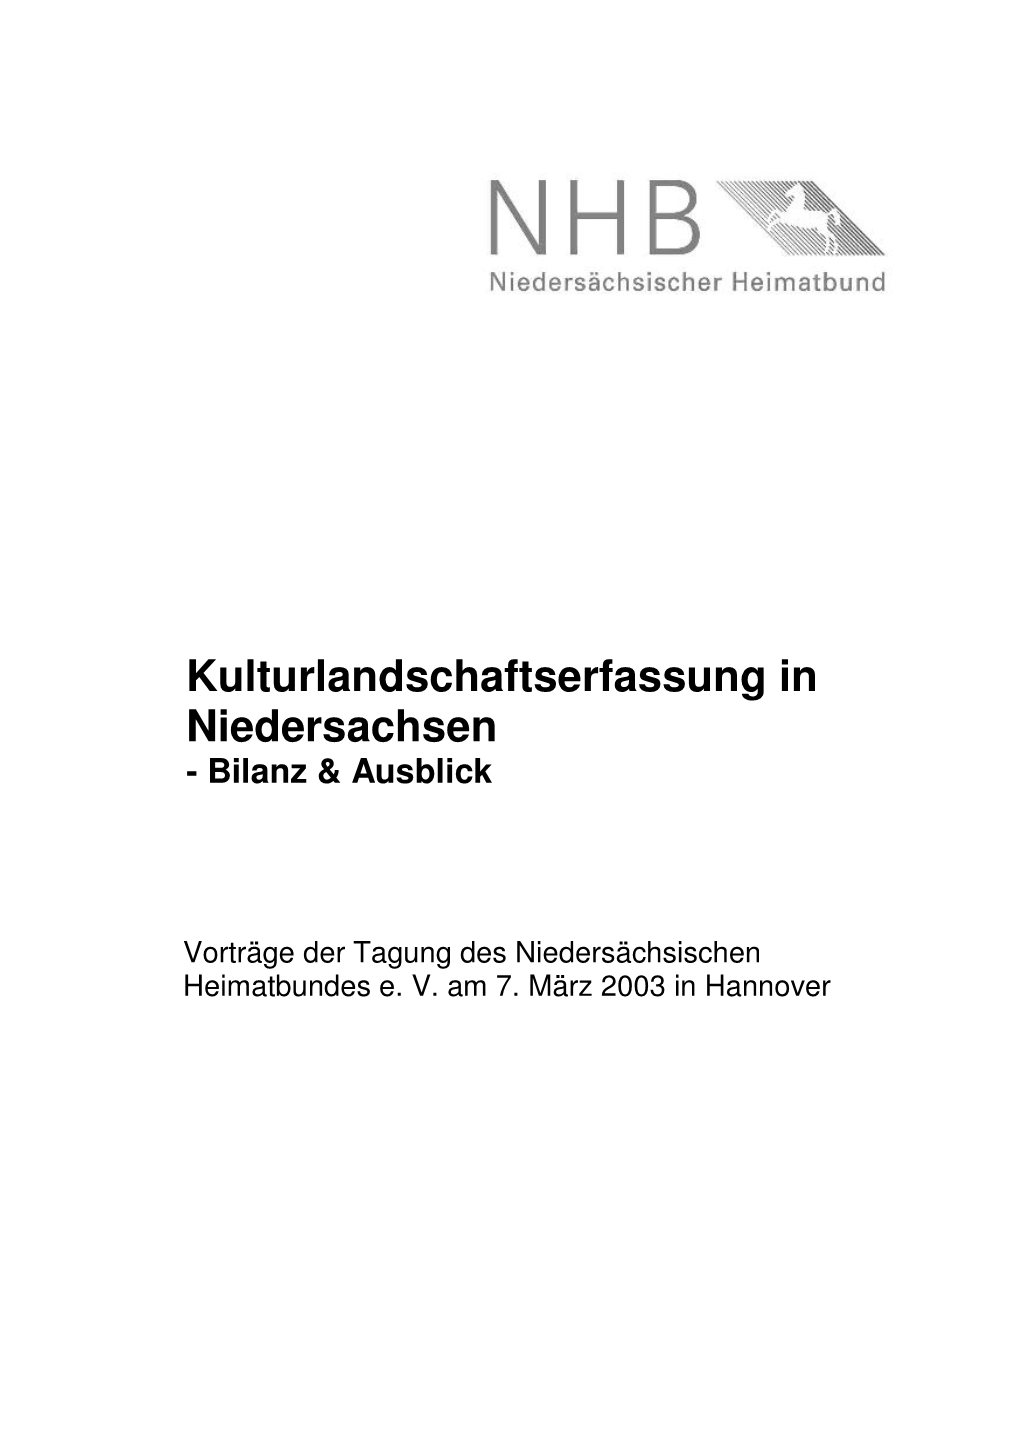 Kulturlandschaftserfassung in Niedersachsen - Bilanz & Ausblick